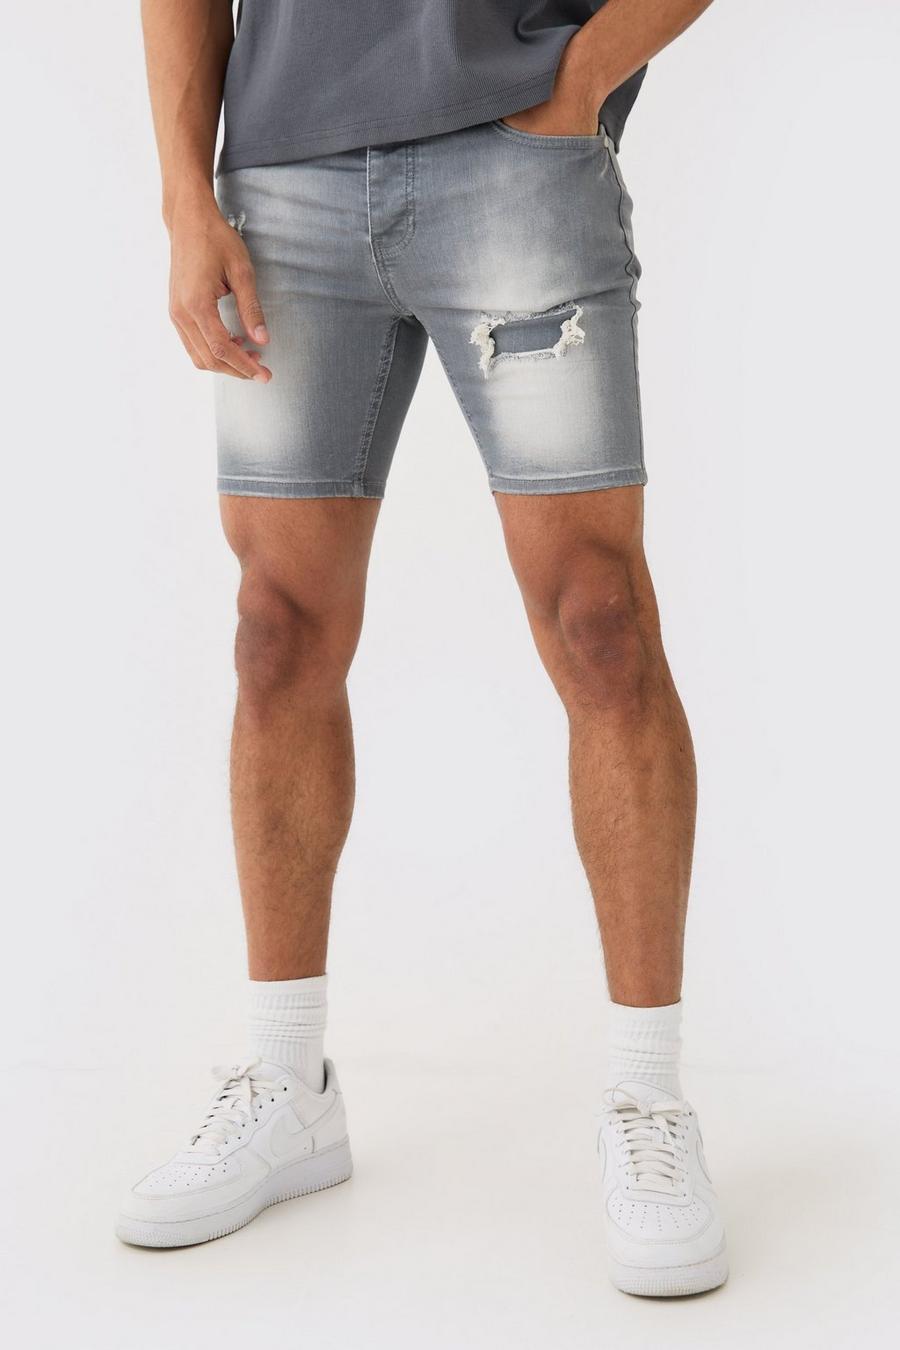 Pantalones cortos vaqueros pitillo elásticos con desgarros cosidos en gris, Grey